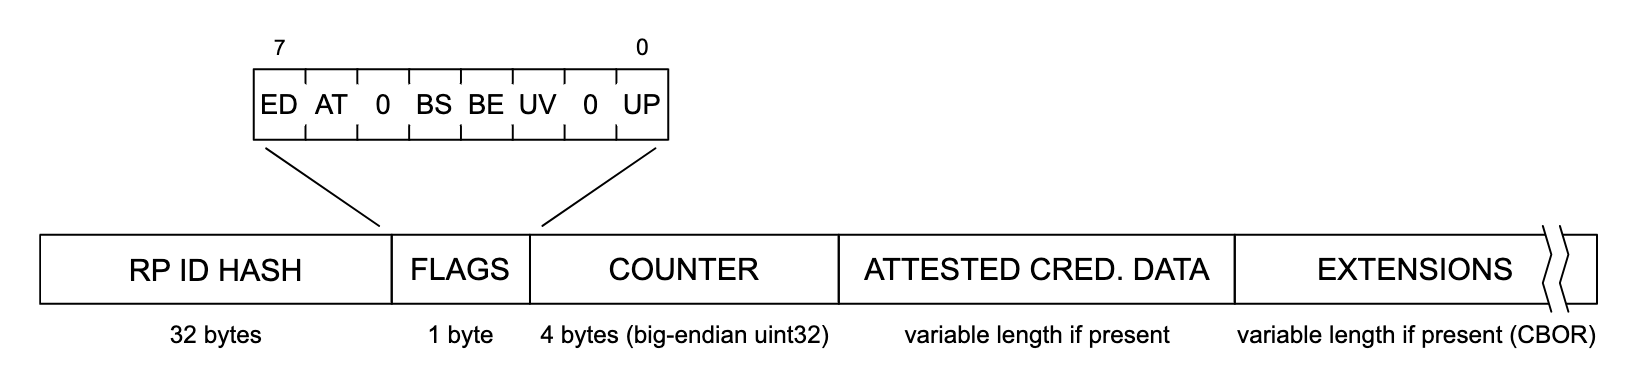 Mô tả cấu trúc dữ liệu xác thực. Từ trái sang phải, mỗi phần của cấu trúc dữ liệu có nội dung &quot;RP ID HASH&quot; (32 byte), &quot;FLAGS&quot; (1 byte), &quot;bộ lọc&quot; (4 byte, Big-endian uint32), &quot;ATTESTE CRED&quot;. DATA&#39; (độ dài thay đổi nếu có) và &quot;EXTENSIONS&quot; (độ dài thay đổi nếu có (CBOR)). Phần &quot;FLAGS&quot; được mở rộng để hiển thị danh sách các cờ tiềm năng, được gắn nhãn từ trái sang phải: &quot;ED&quot;, &quot;AT&quot;, &quot;0&quot;, &quot;BS&quot;, &quot;BE&quot;, &quot;UV&quot;, &quot;0&quot; và &quot;UP&quot;.